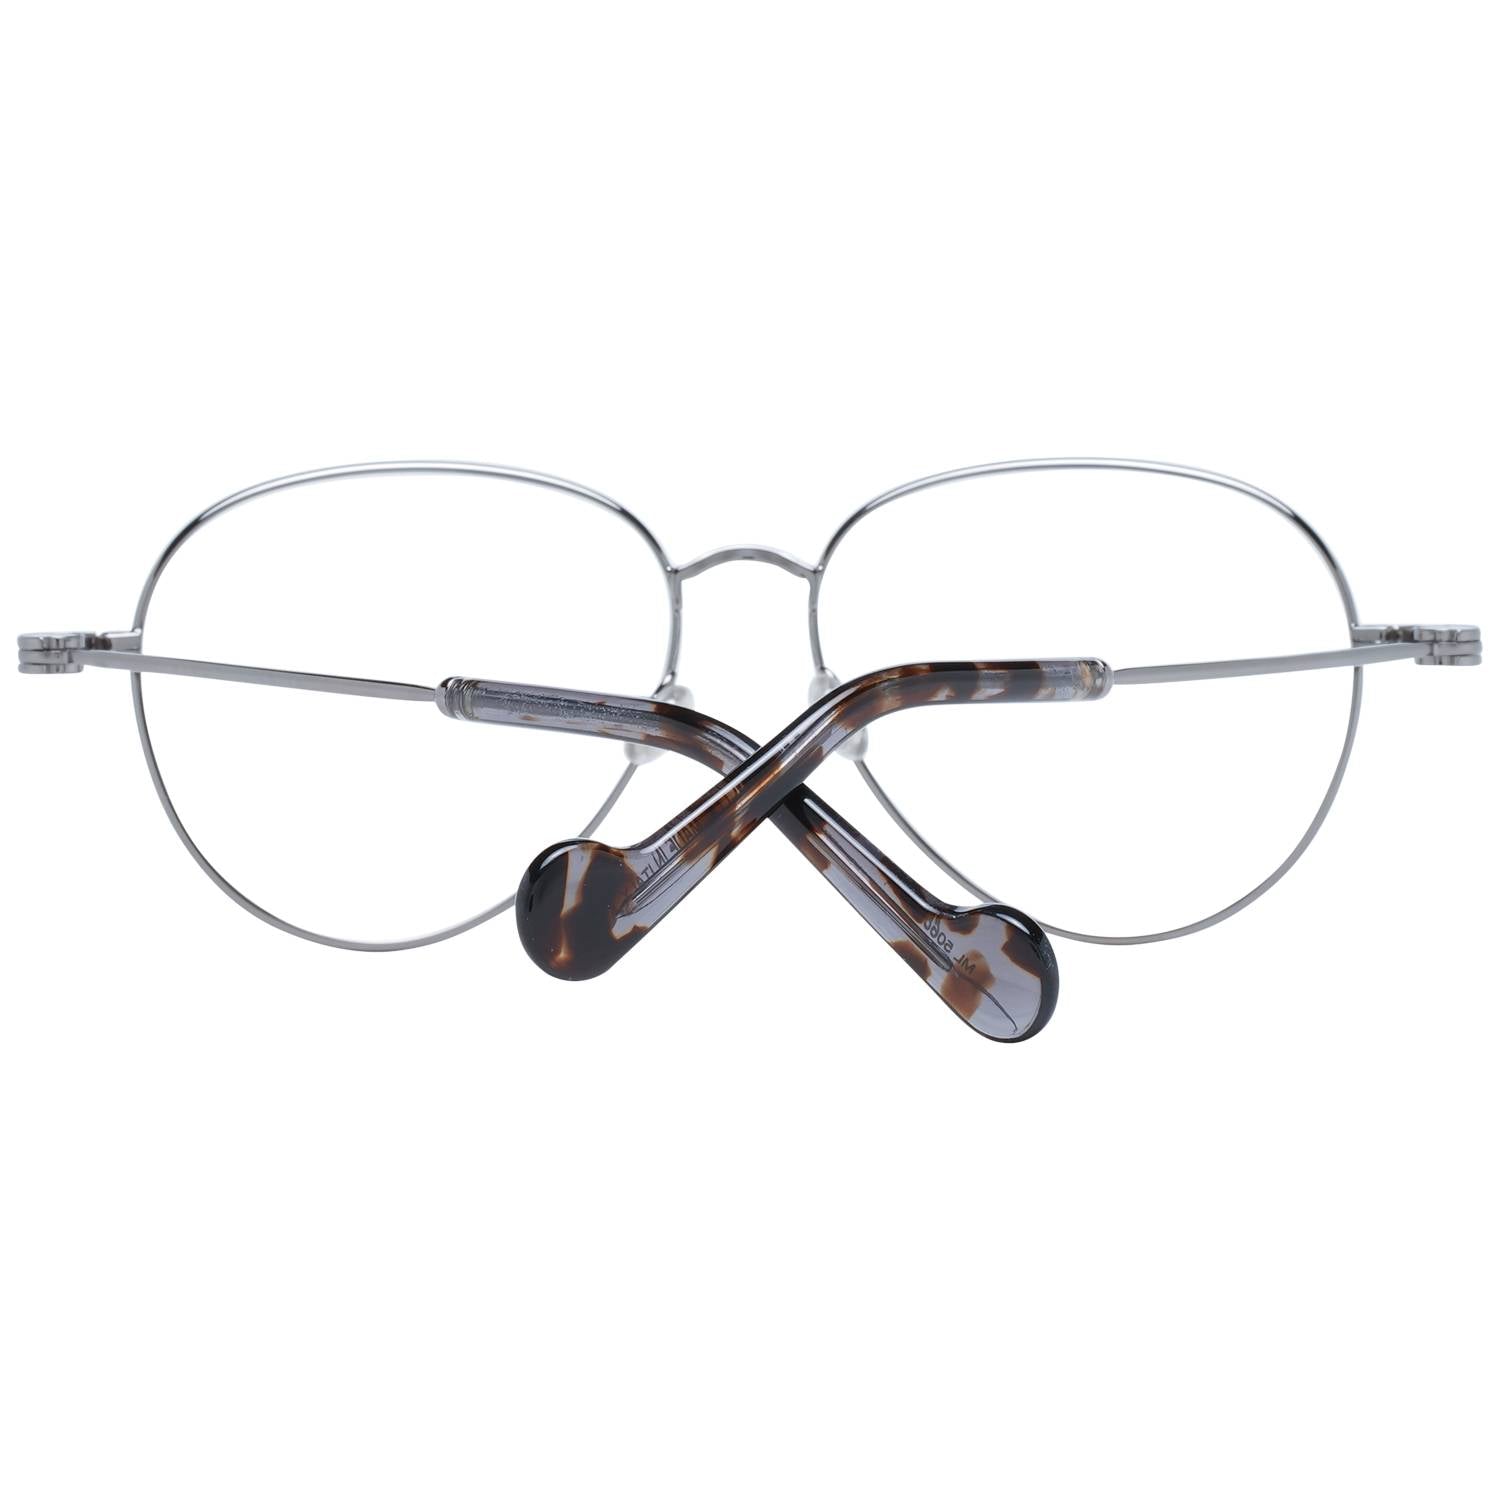 Moncler Eyeglasses Moncler Glasses Frames ML5068 008 55mm Eyeglasses Eyewear UK USA Australia 